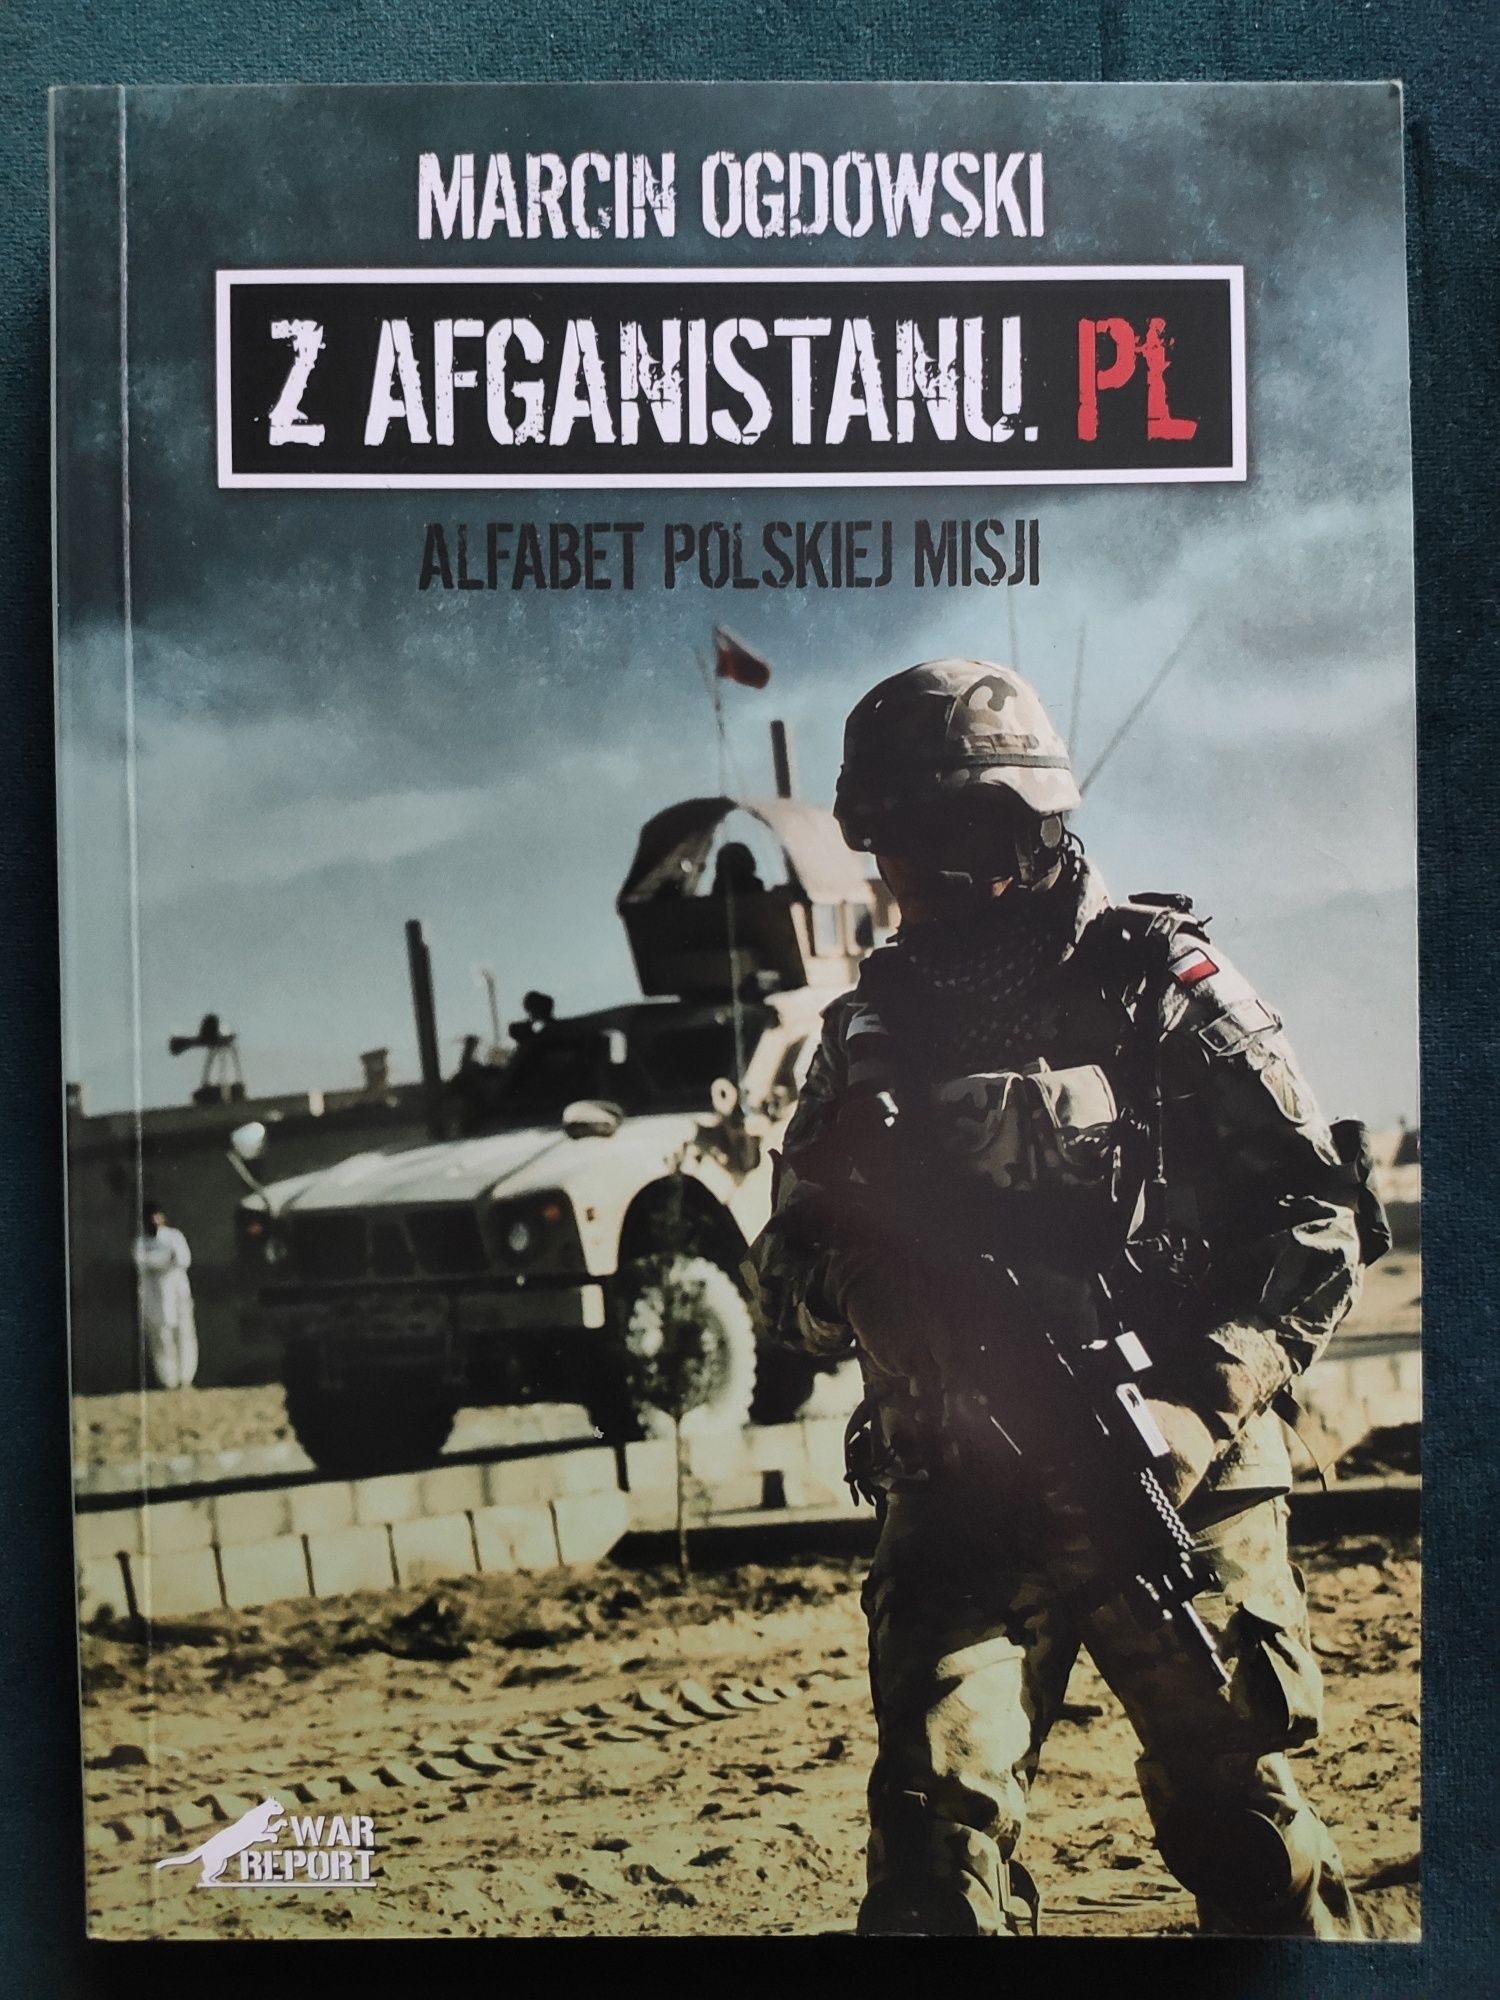 Z Afganistanu.pl Alfabet Polskiej misji. Marcin Ogdowski